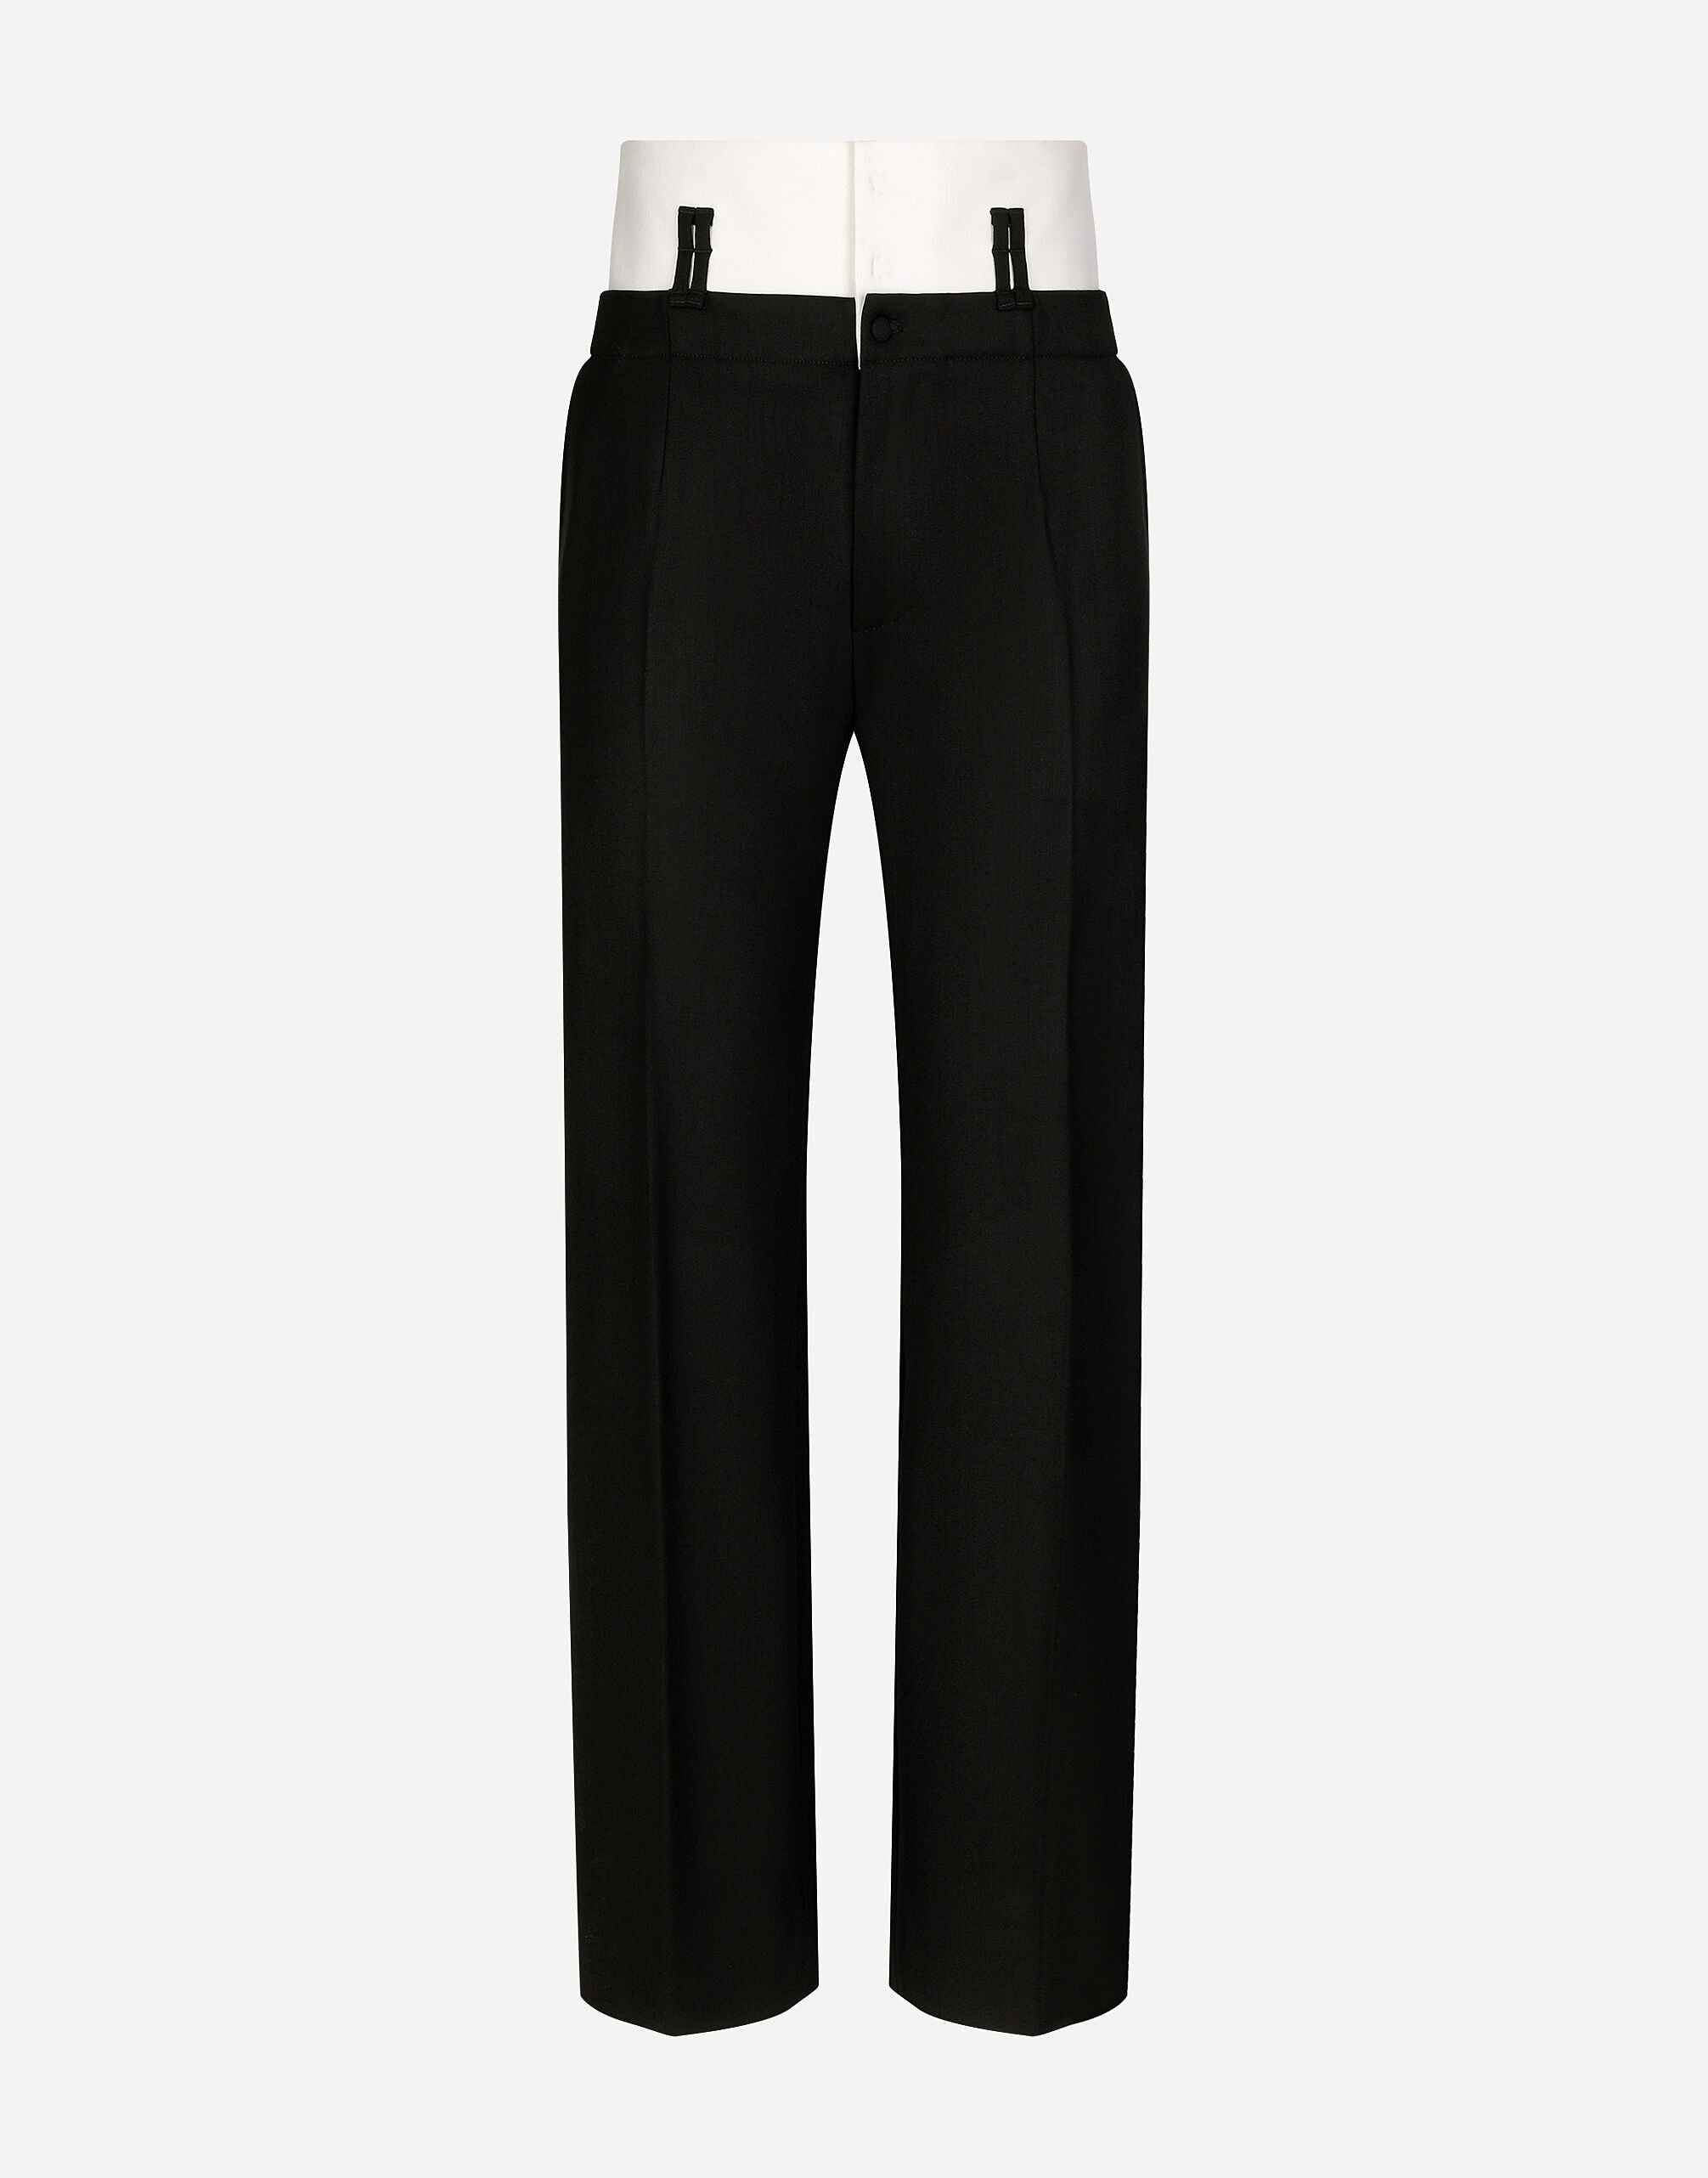 Dolce & Gabbana Pantalon couture avec ceinture contrastante Noir G2TM9TFUBFY